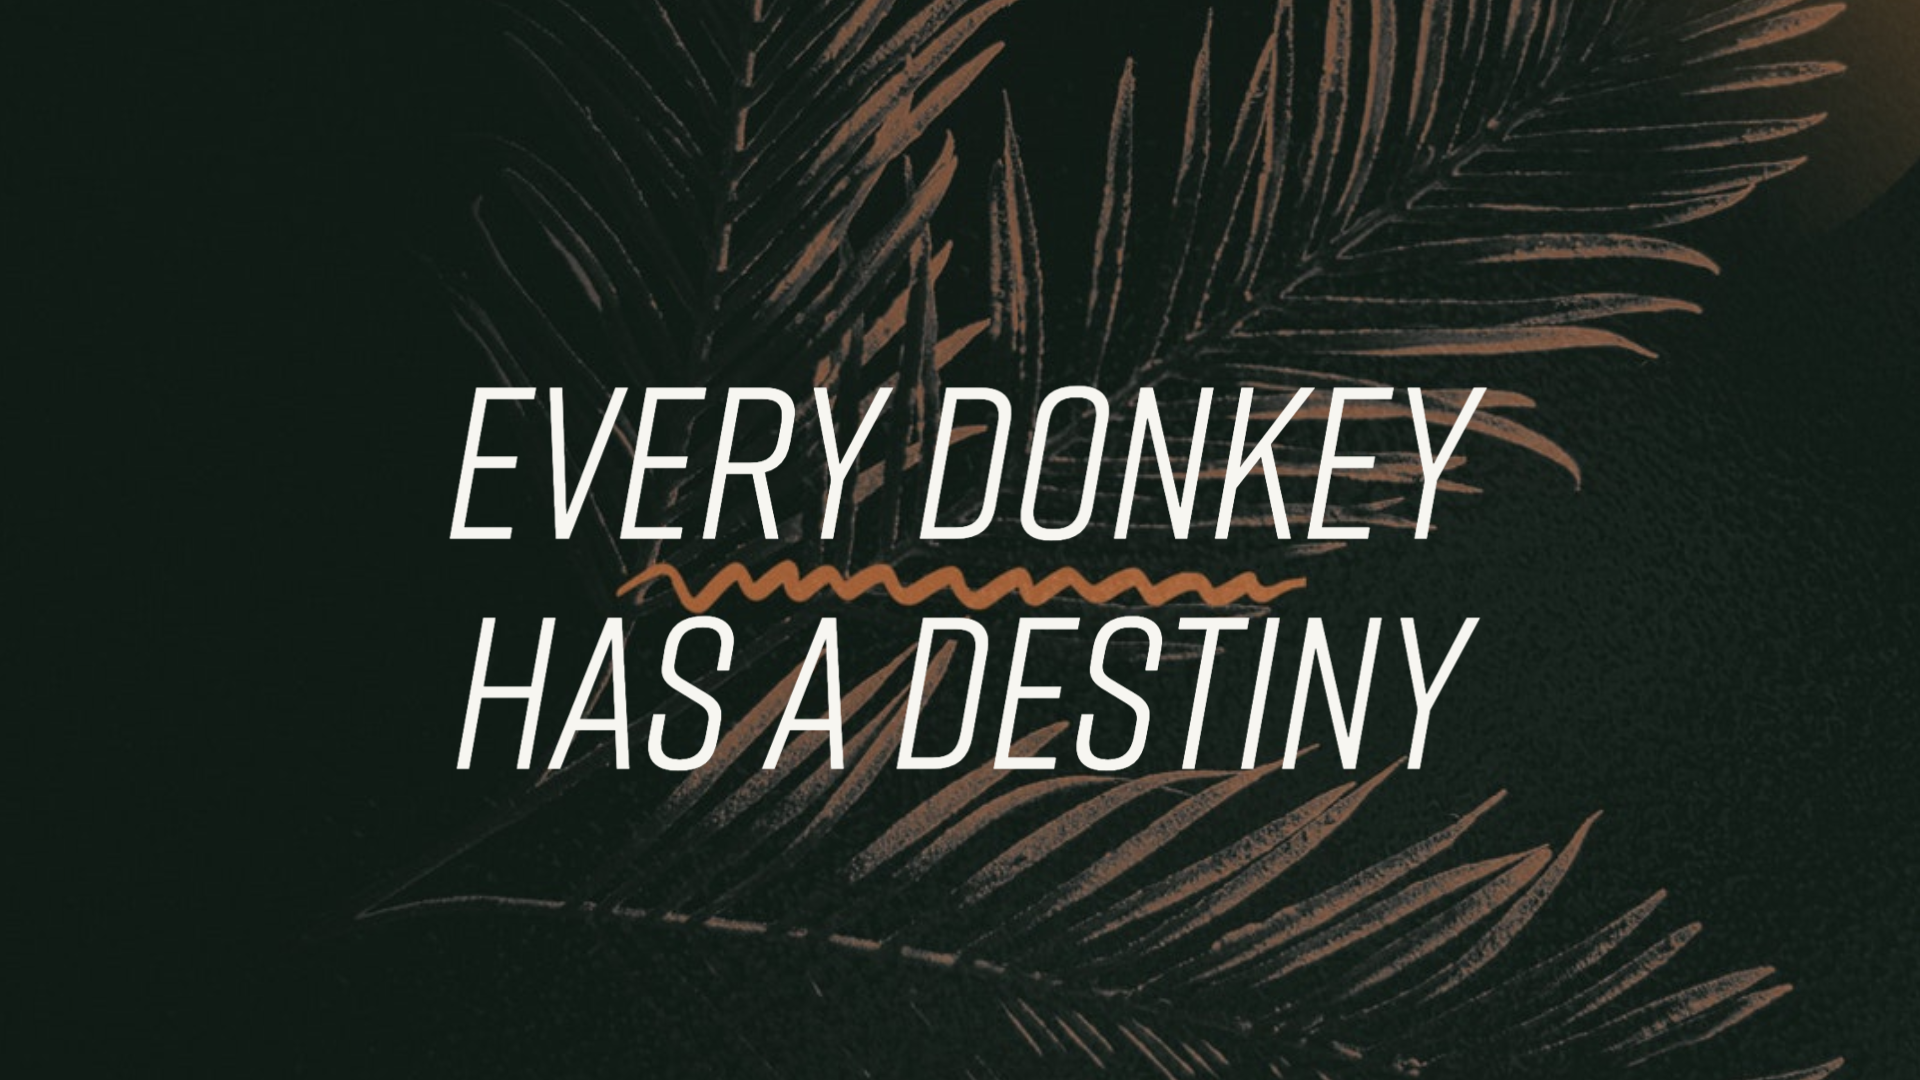 Palm Sunday - Every Donkey has a Destiny